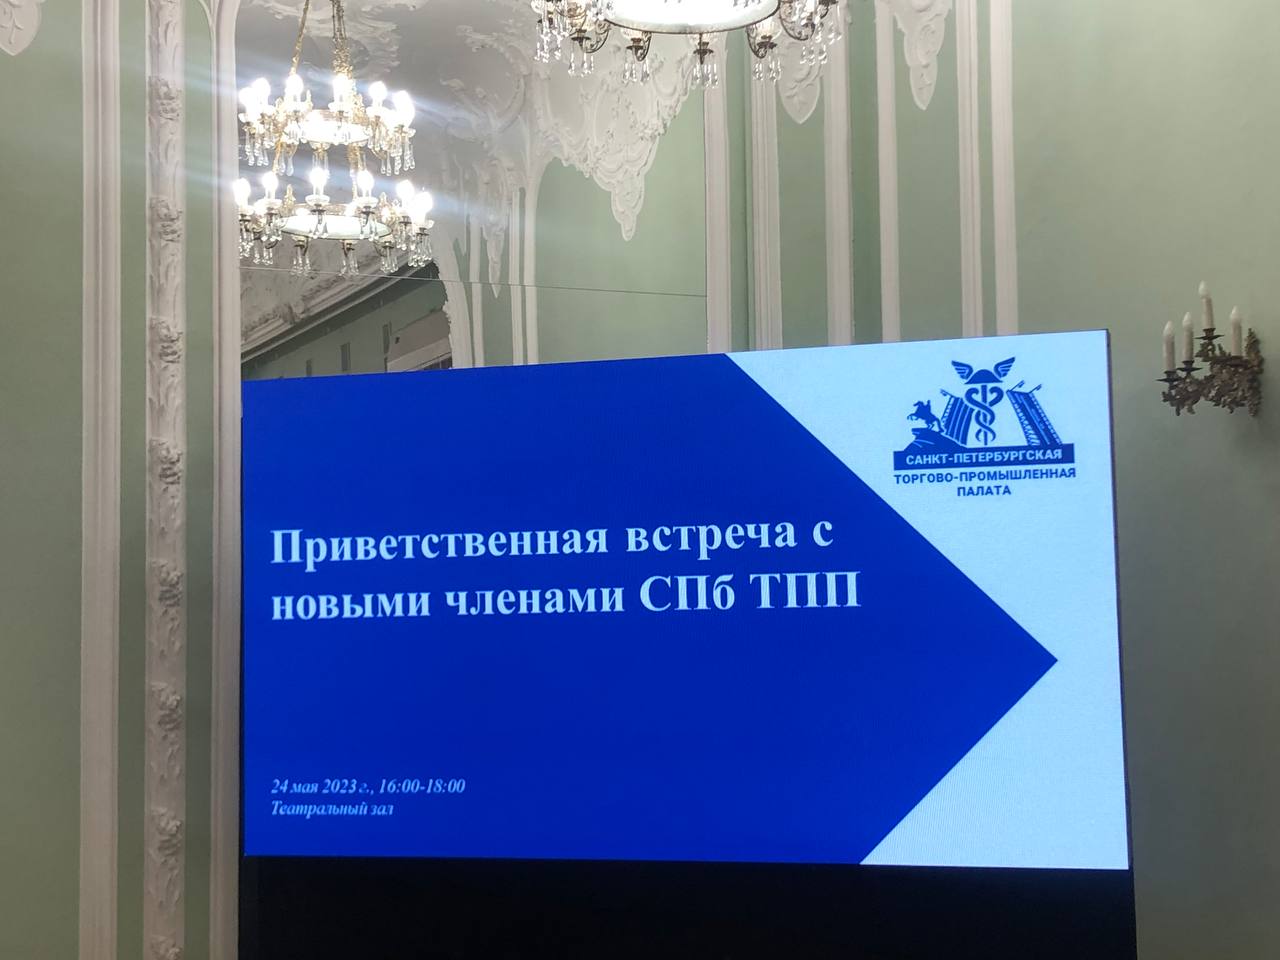 Приветственная встреча в Торгово-промышленной палате Санкт-Петербурга